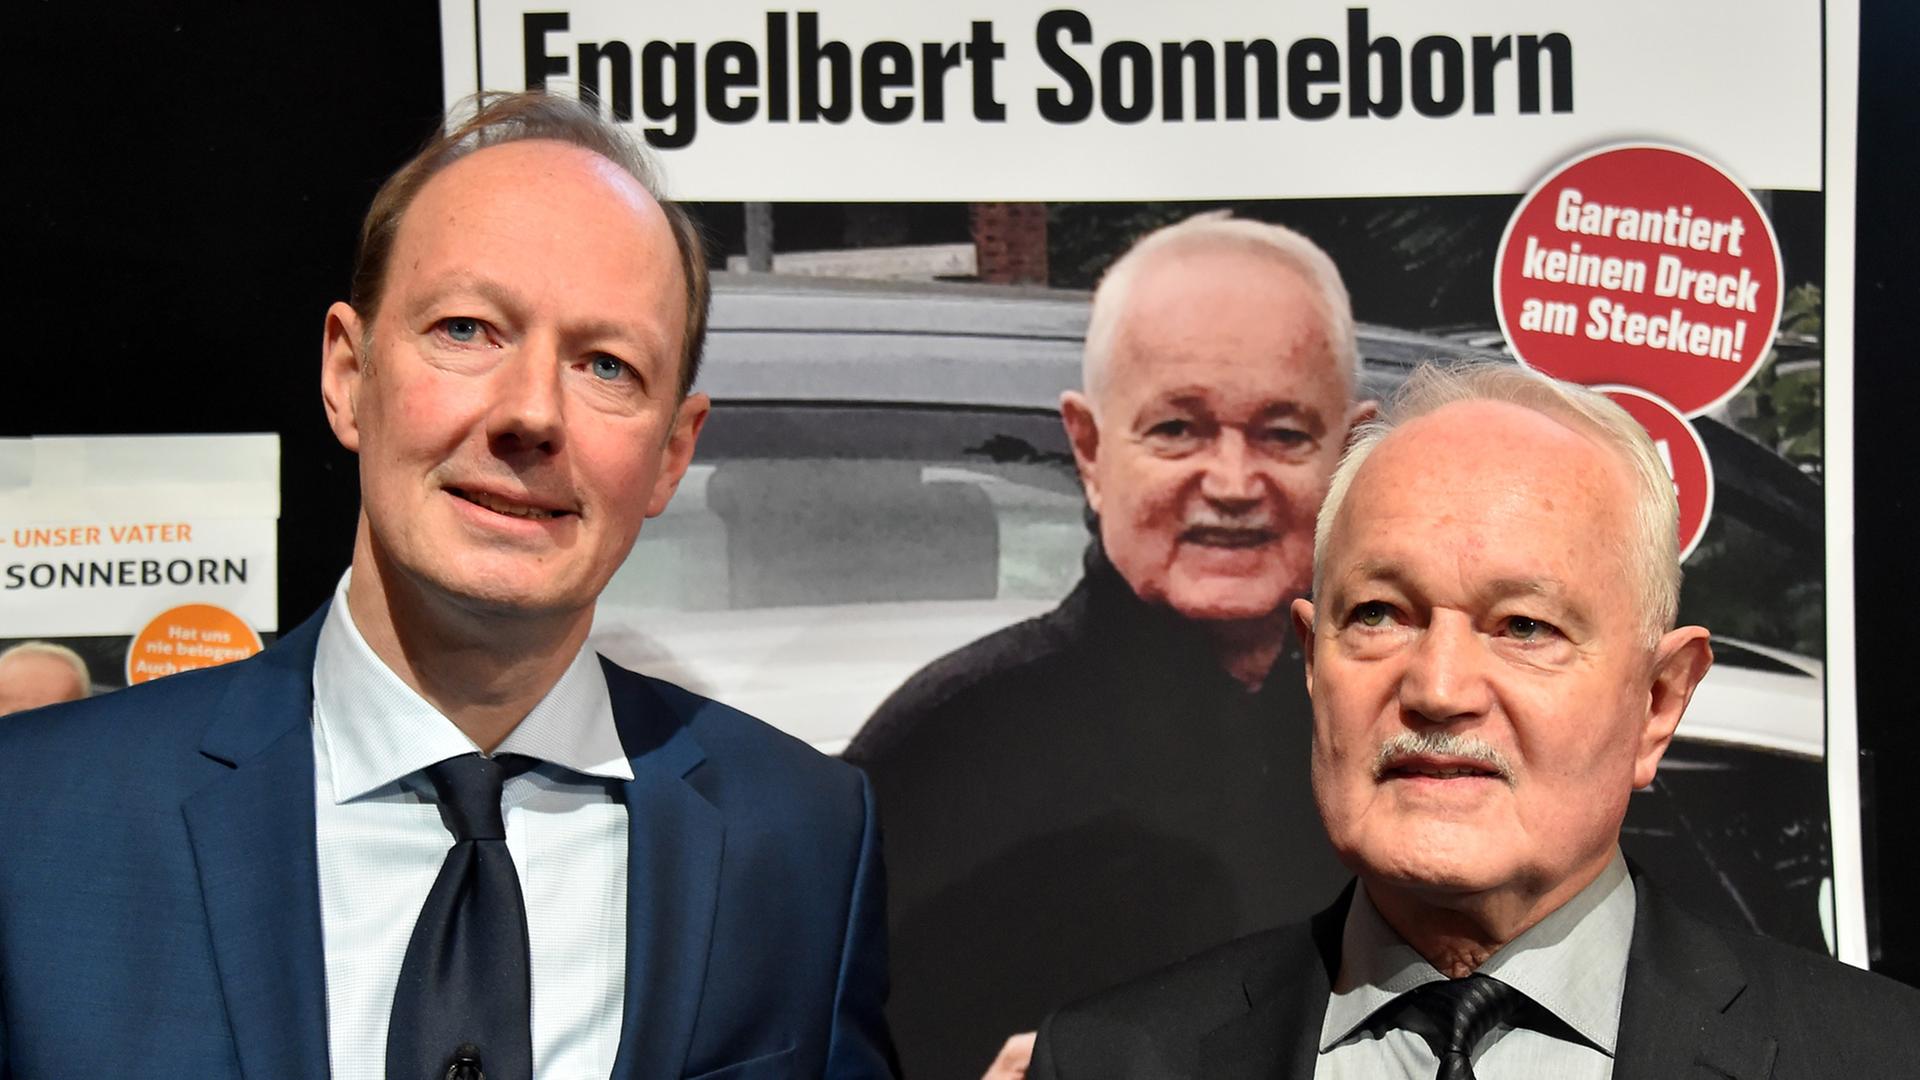 Der Satiriker und Europaabgeordnete der Spaß-Vereinigung «Die Partei», Martin Sonneborn (links), stellt in Berlin seinen Vater Engelbert Sonneborn als Kandidaten der Piratenpartei für die Bundespräsidentenwahl vor.